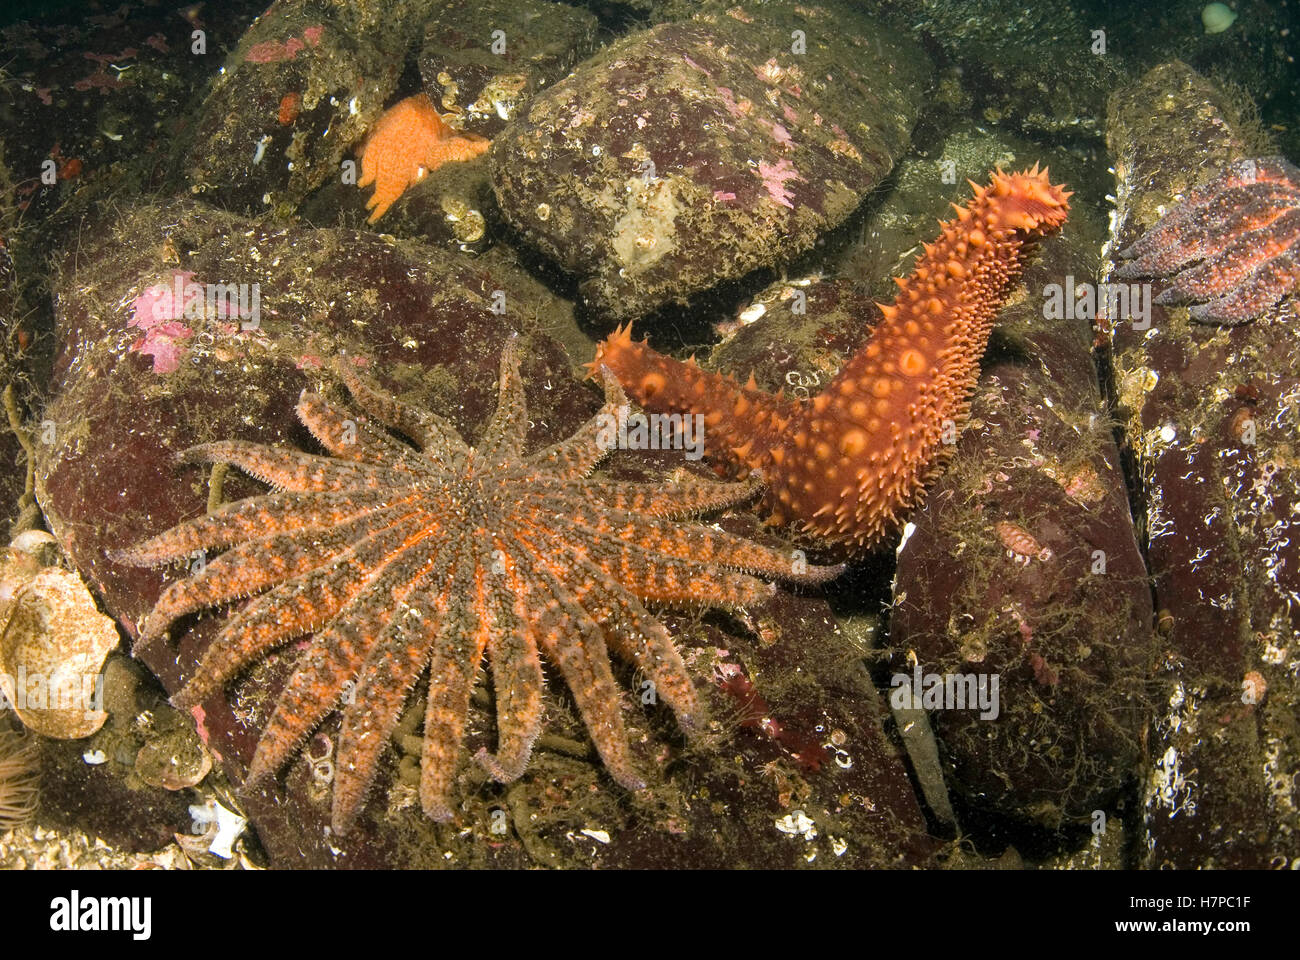 Pepino de mar exhibe respuesta de escape cuando se ven amenazados por las armas de las estrellas de mar (Girasol Pycnopodia helianthoides), Vancouver Foto de stock